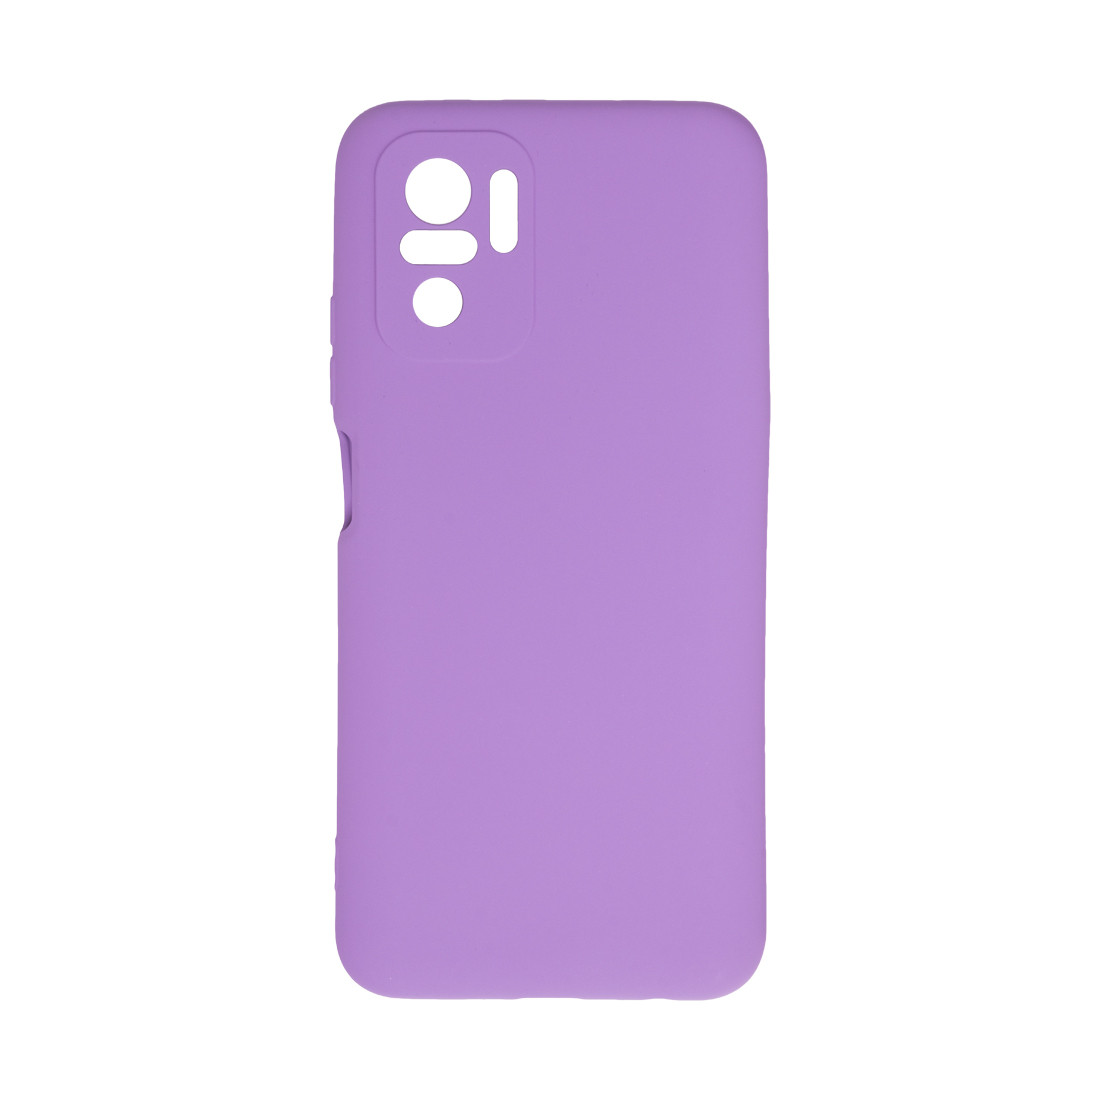 Чехол для телефона  X-Game  XG-HS25  для Redmi Note 10S  Силиконовый  Фиолетовый  Пол. пакет